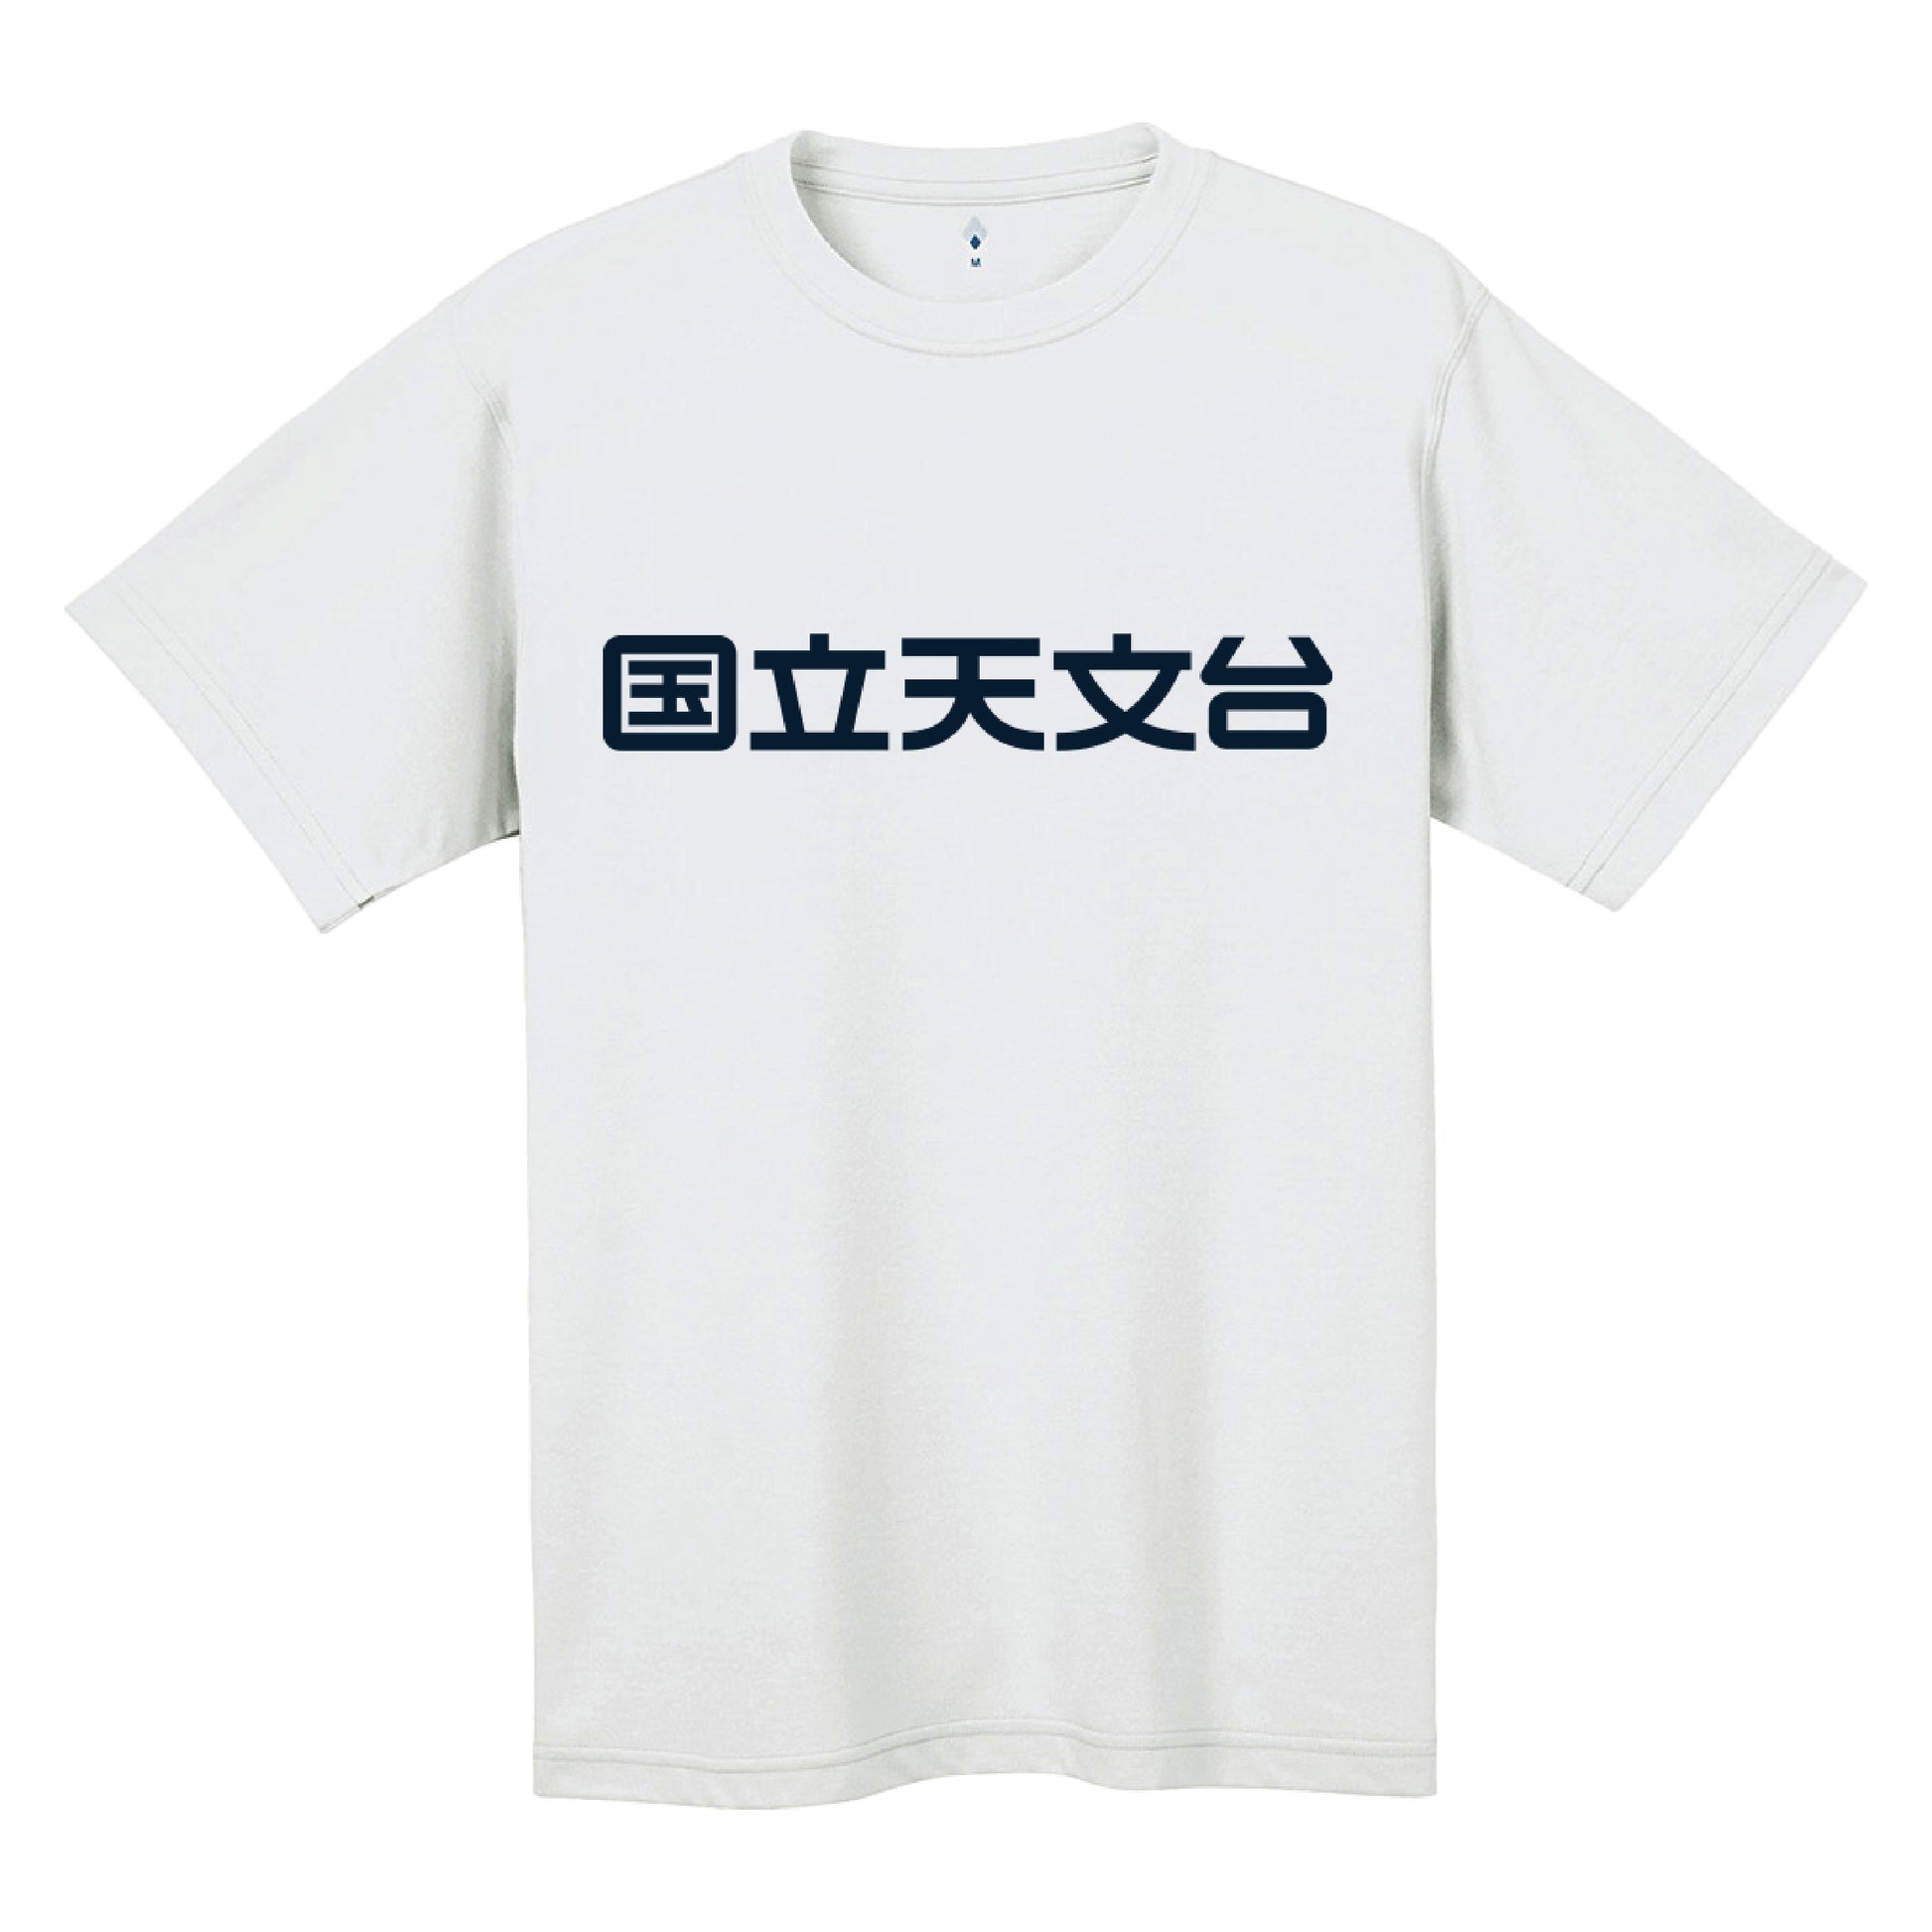 国立天文台 NAOJ漢字 ロゴマーク WIC. Tシャツ ホワイト S 00